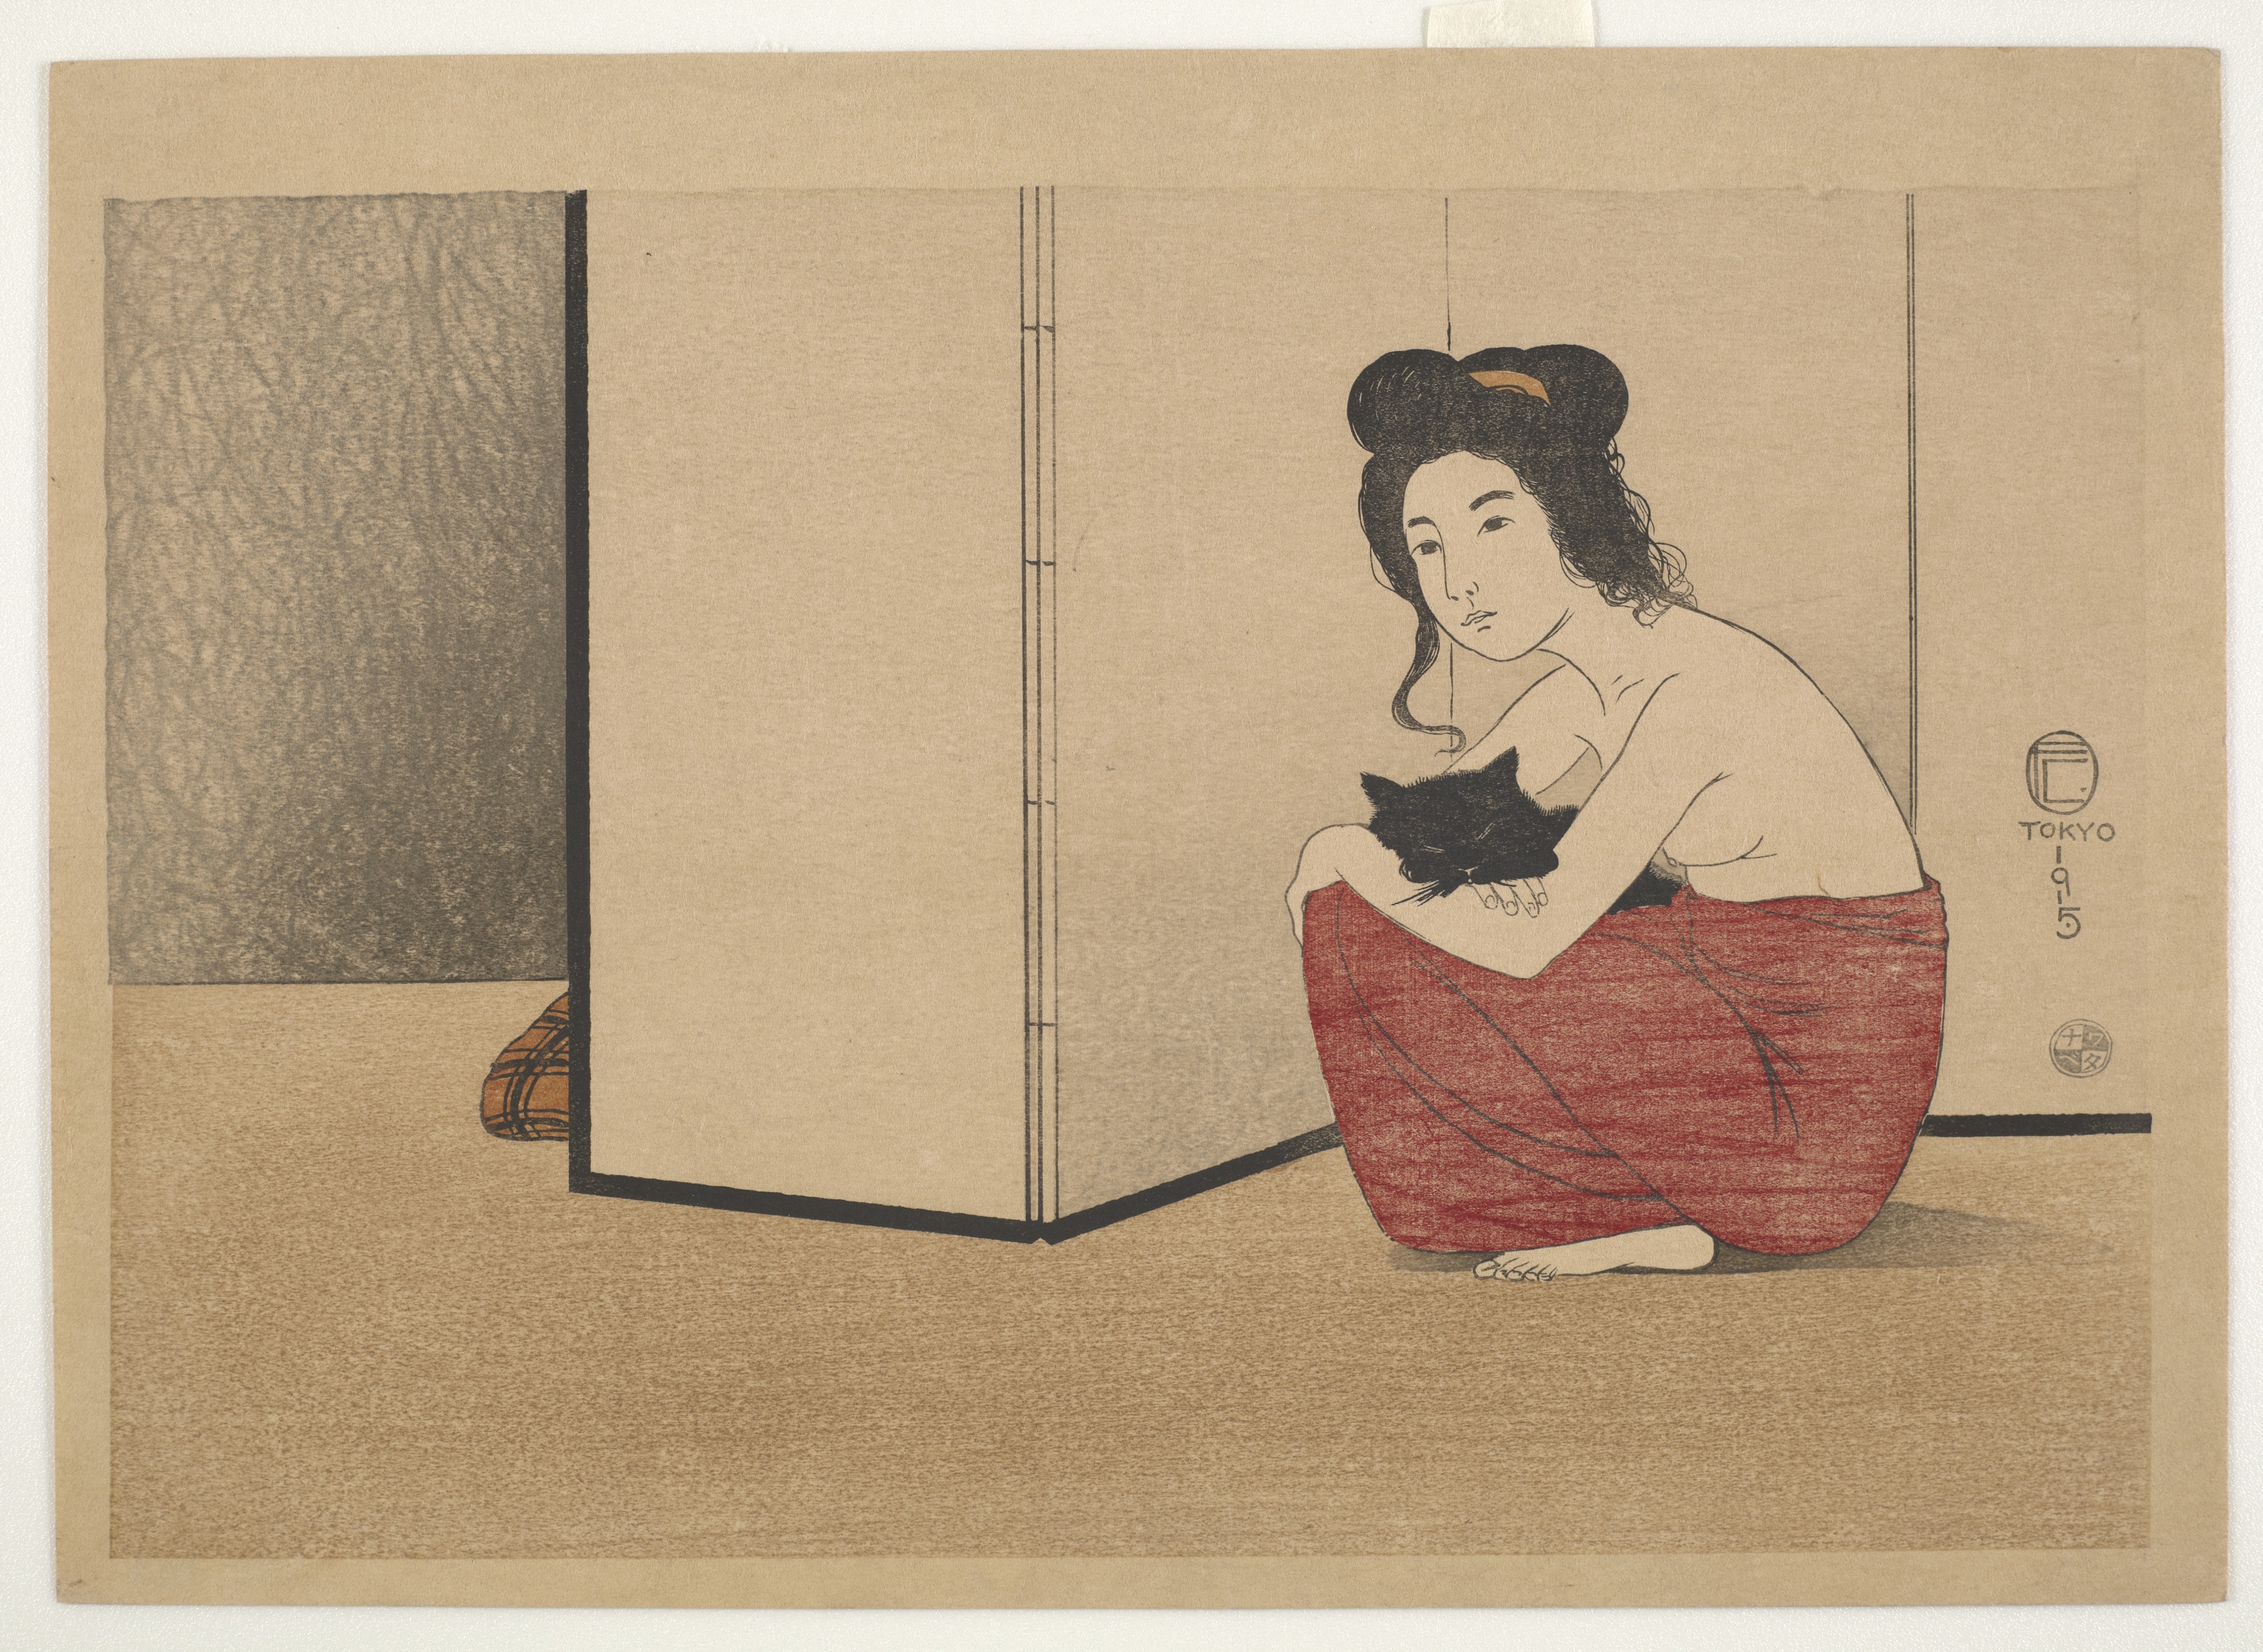 검은 고양이를 안고 있는 나체의 여인(Nude Woman Holding a Black Cat) by Fritz Capelari - 1915 - 21 x 31.3 cm 